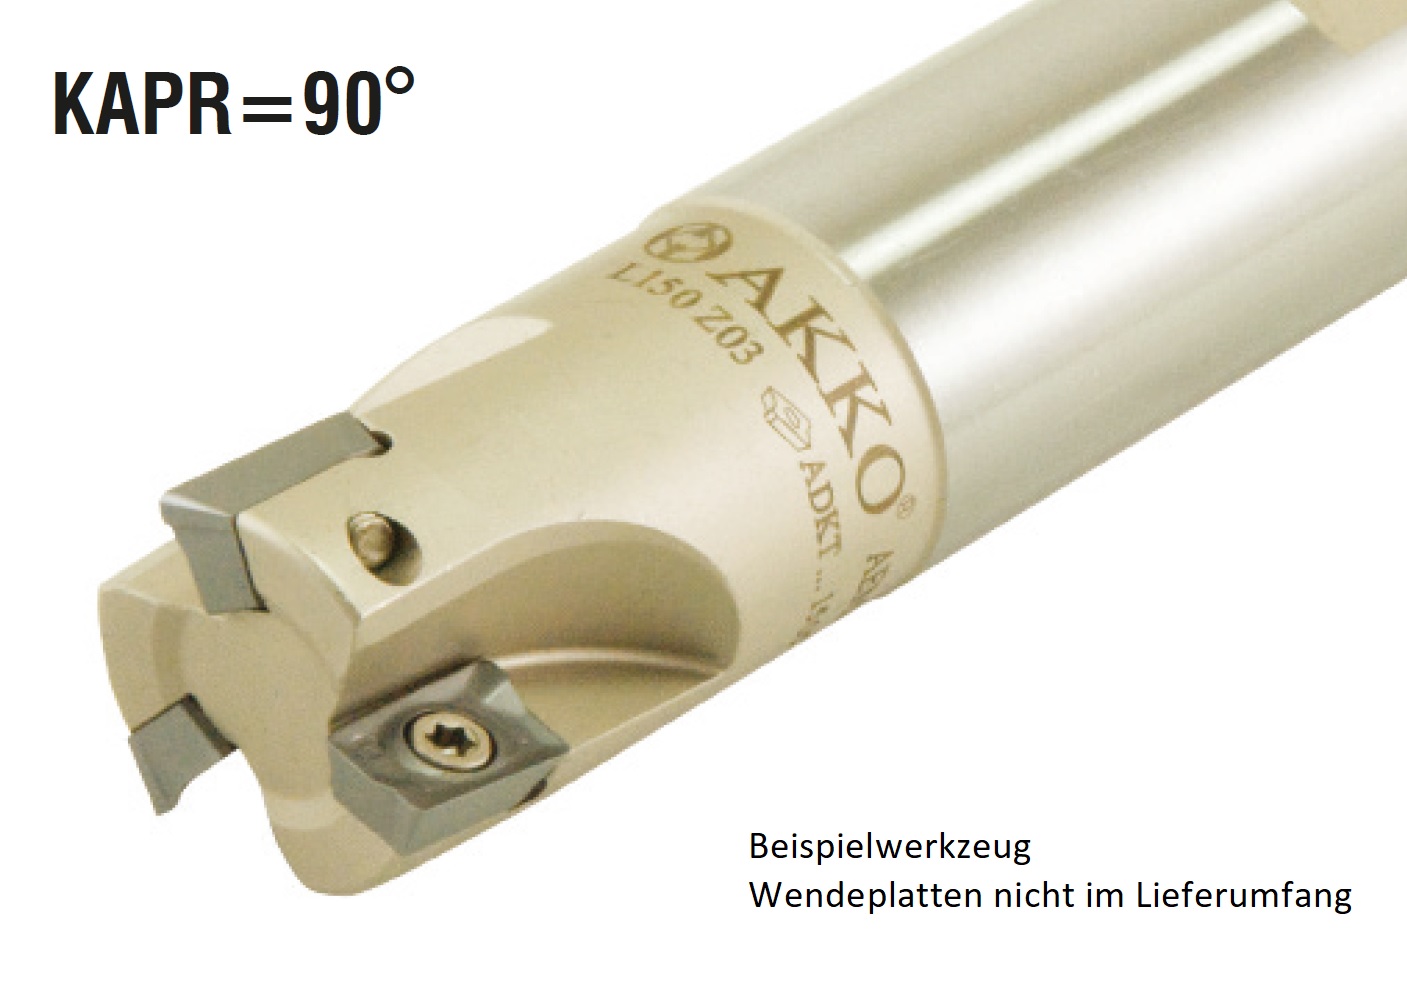 AKKO-Wendeplatten-Schaftfräser ø 30 mm, 90°, kompatibel mit Iscar AD.. 1505..
Schaft-ø 25, ohne Innenkühlung, Z=3